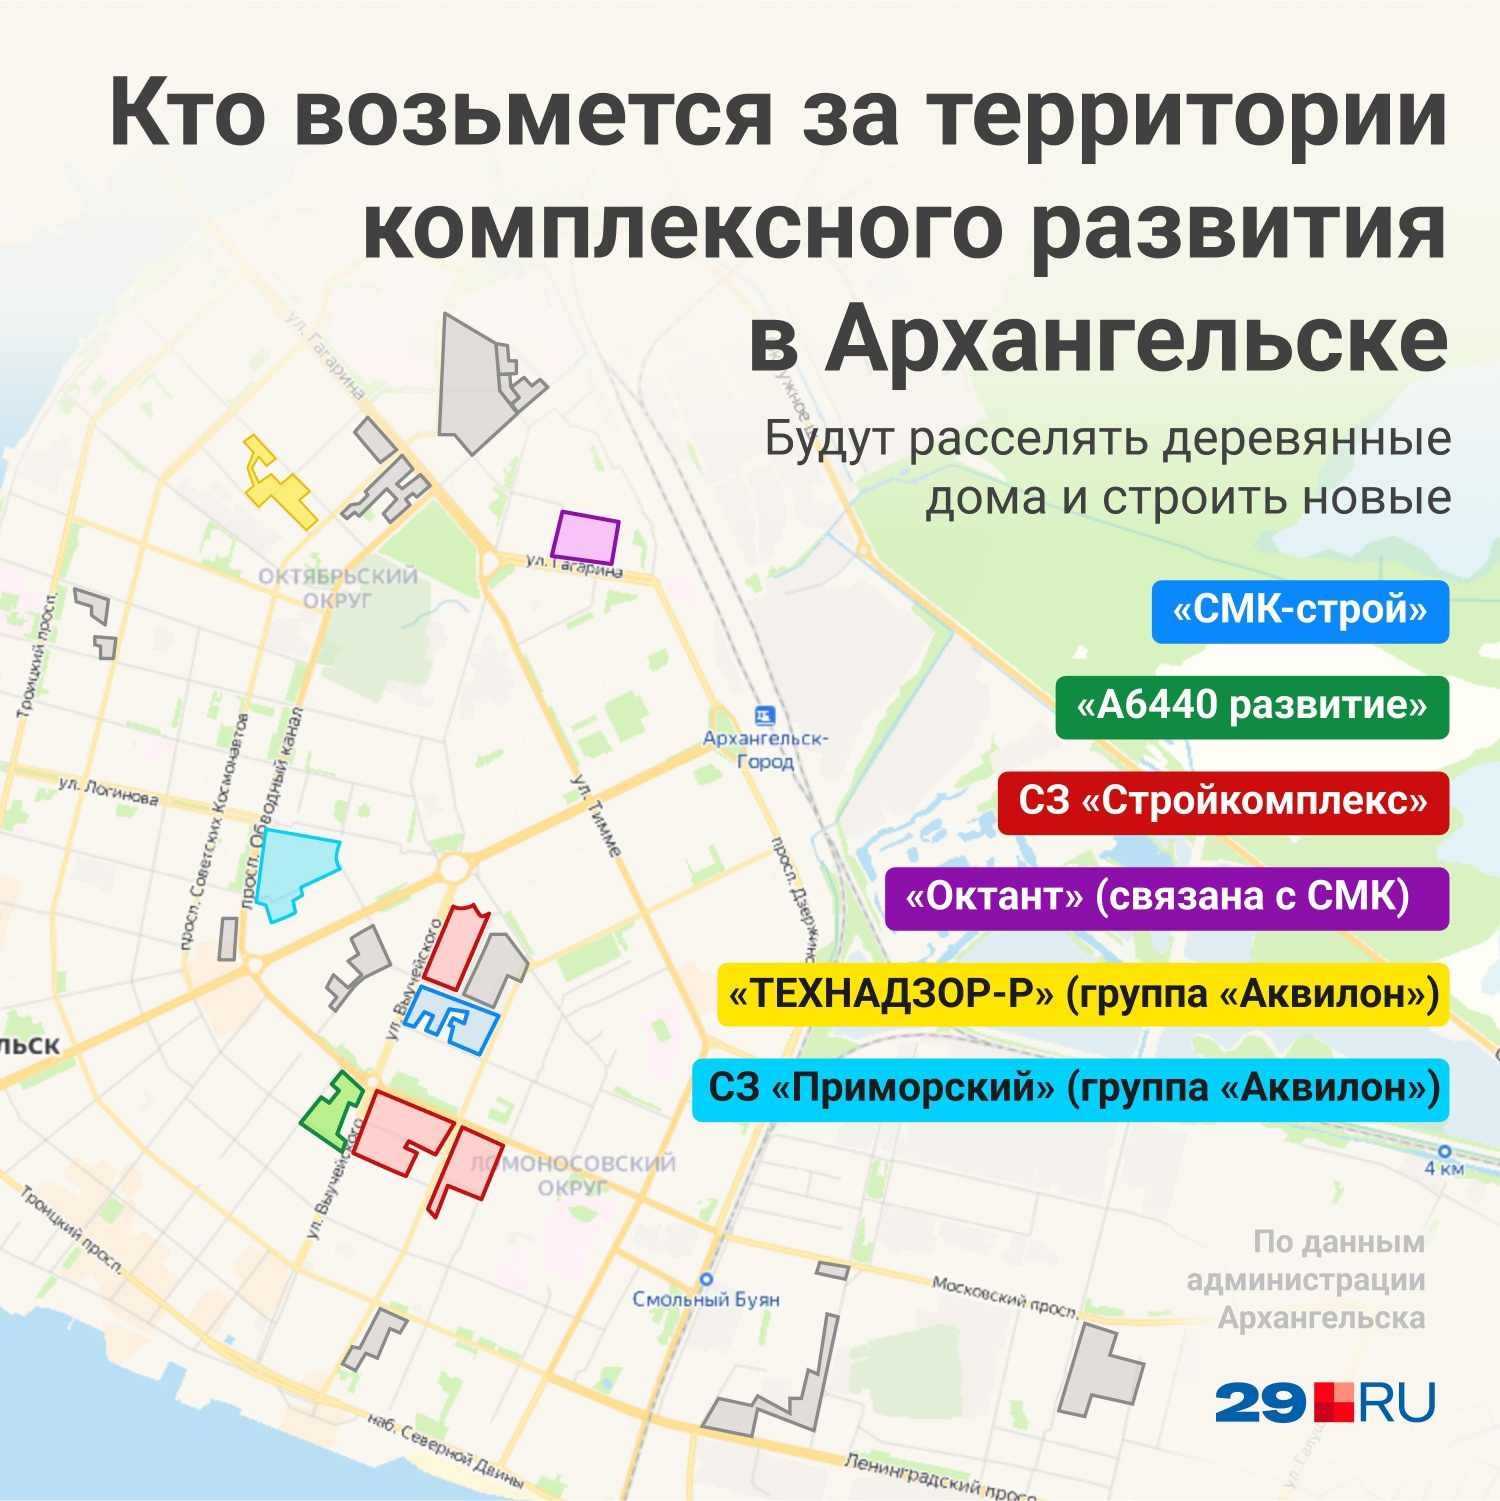 На этой картинке показано, кто будет строить в центре города, а ниже есть полная карта с участками